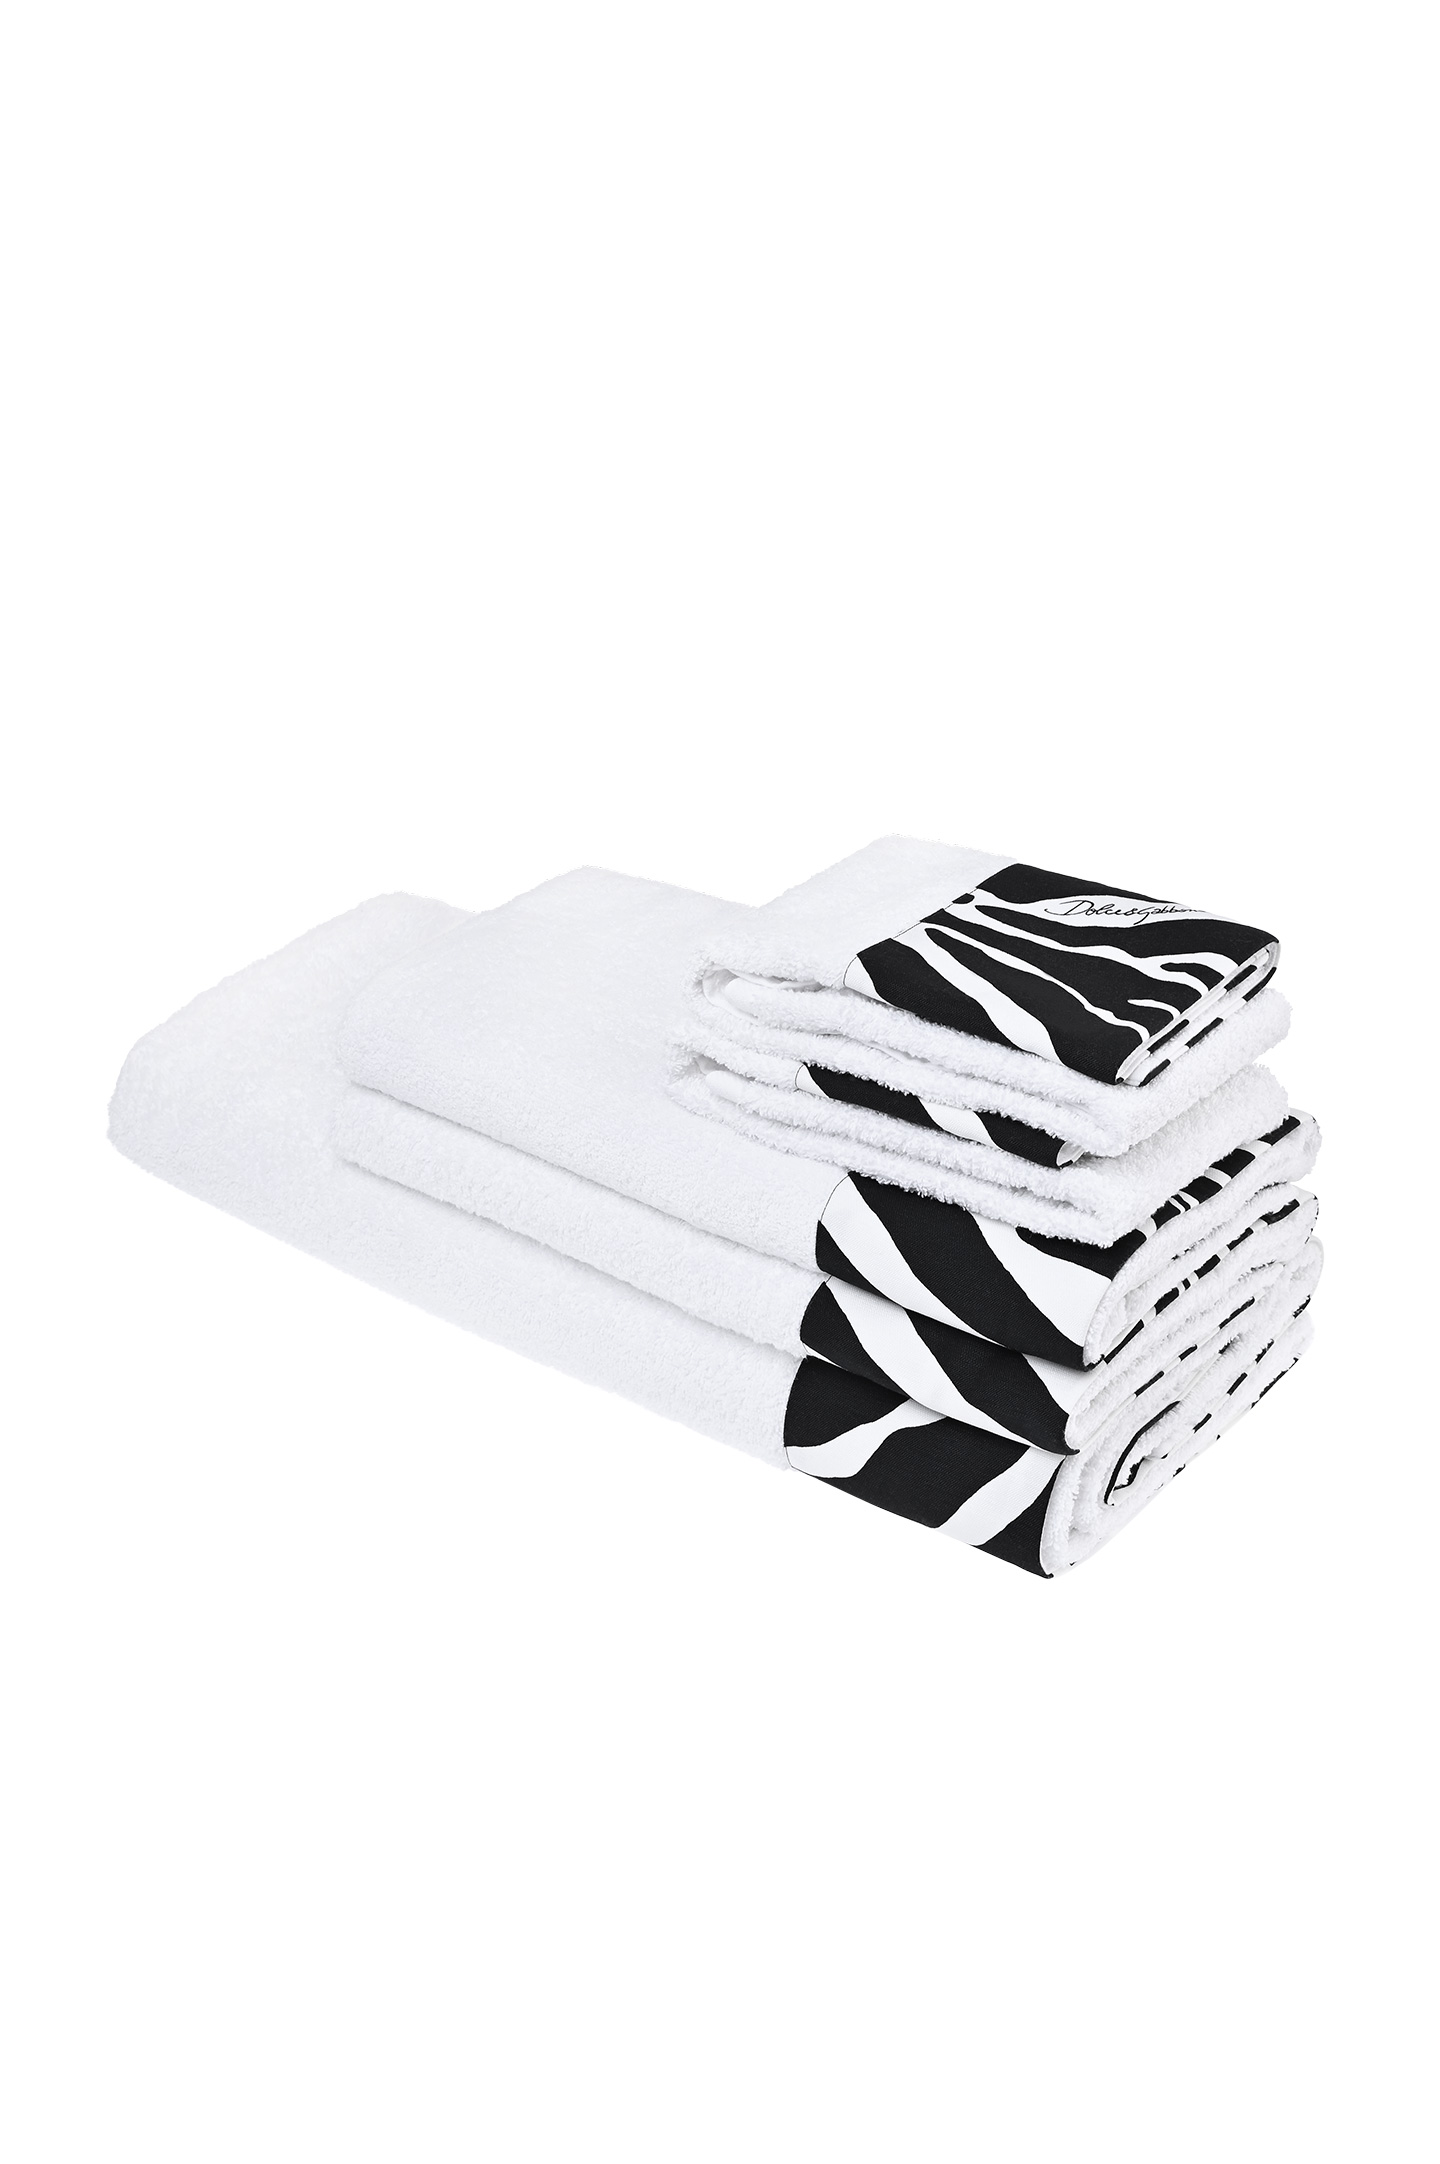 Комплект полотенец DOLCE & GABBANA TCFS01 TCAAU, цвет: Черно-белый, Unisex